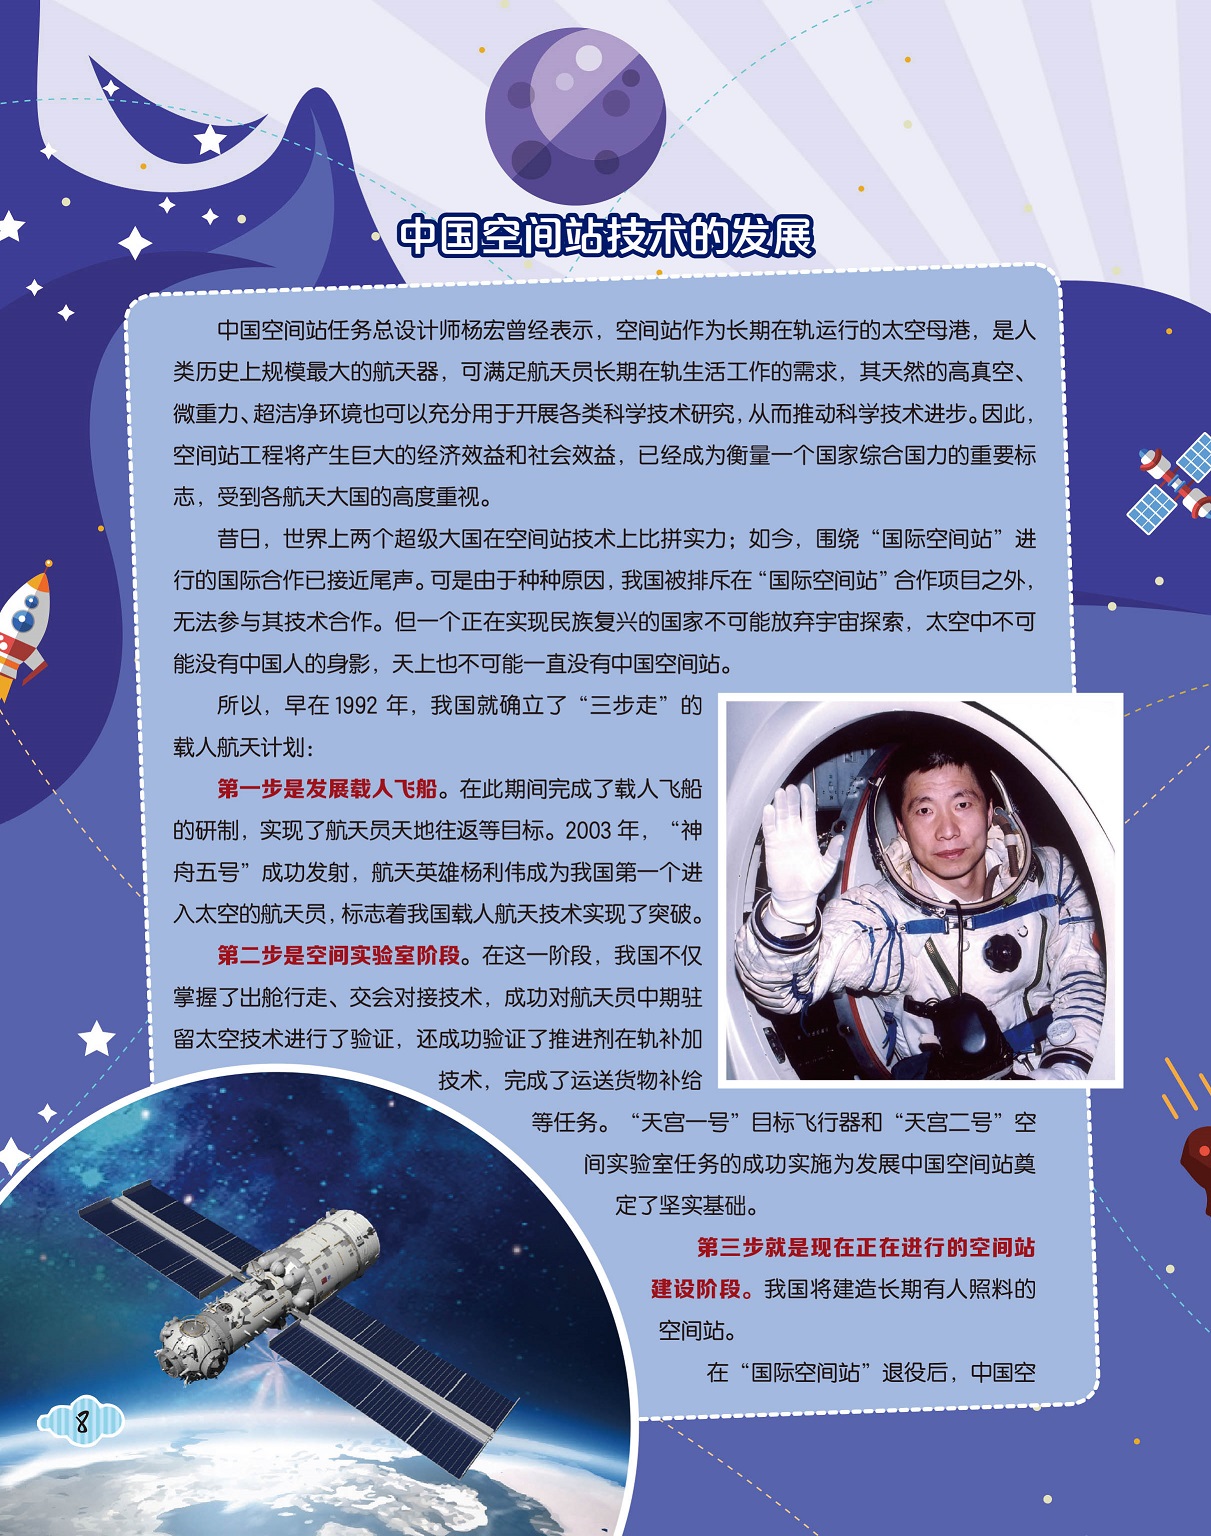 中国空间站技术的发展,空间站建设阶段